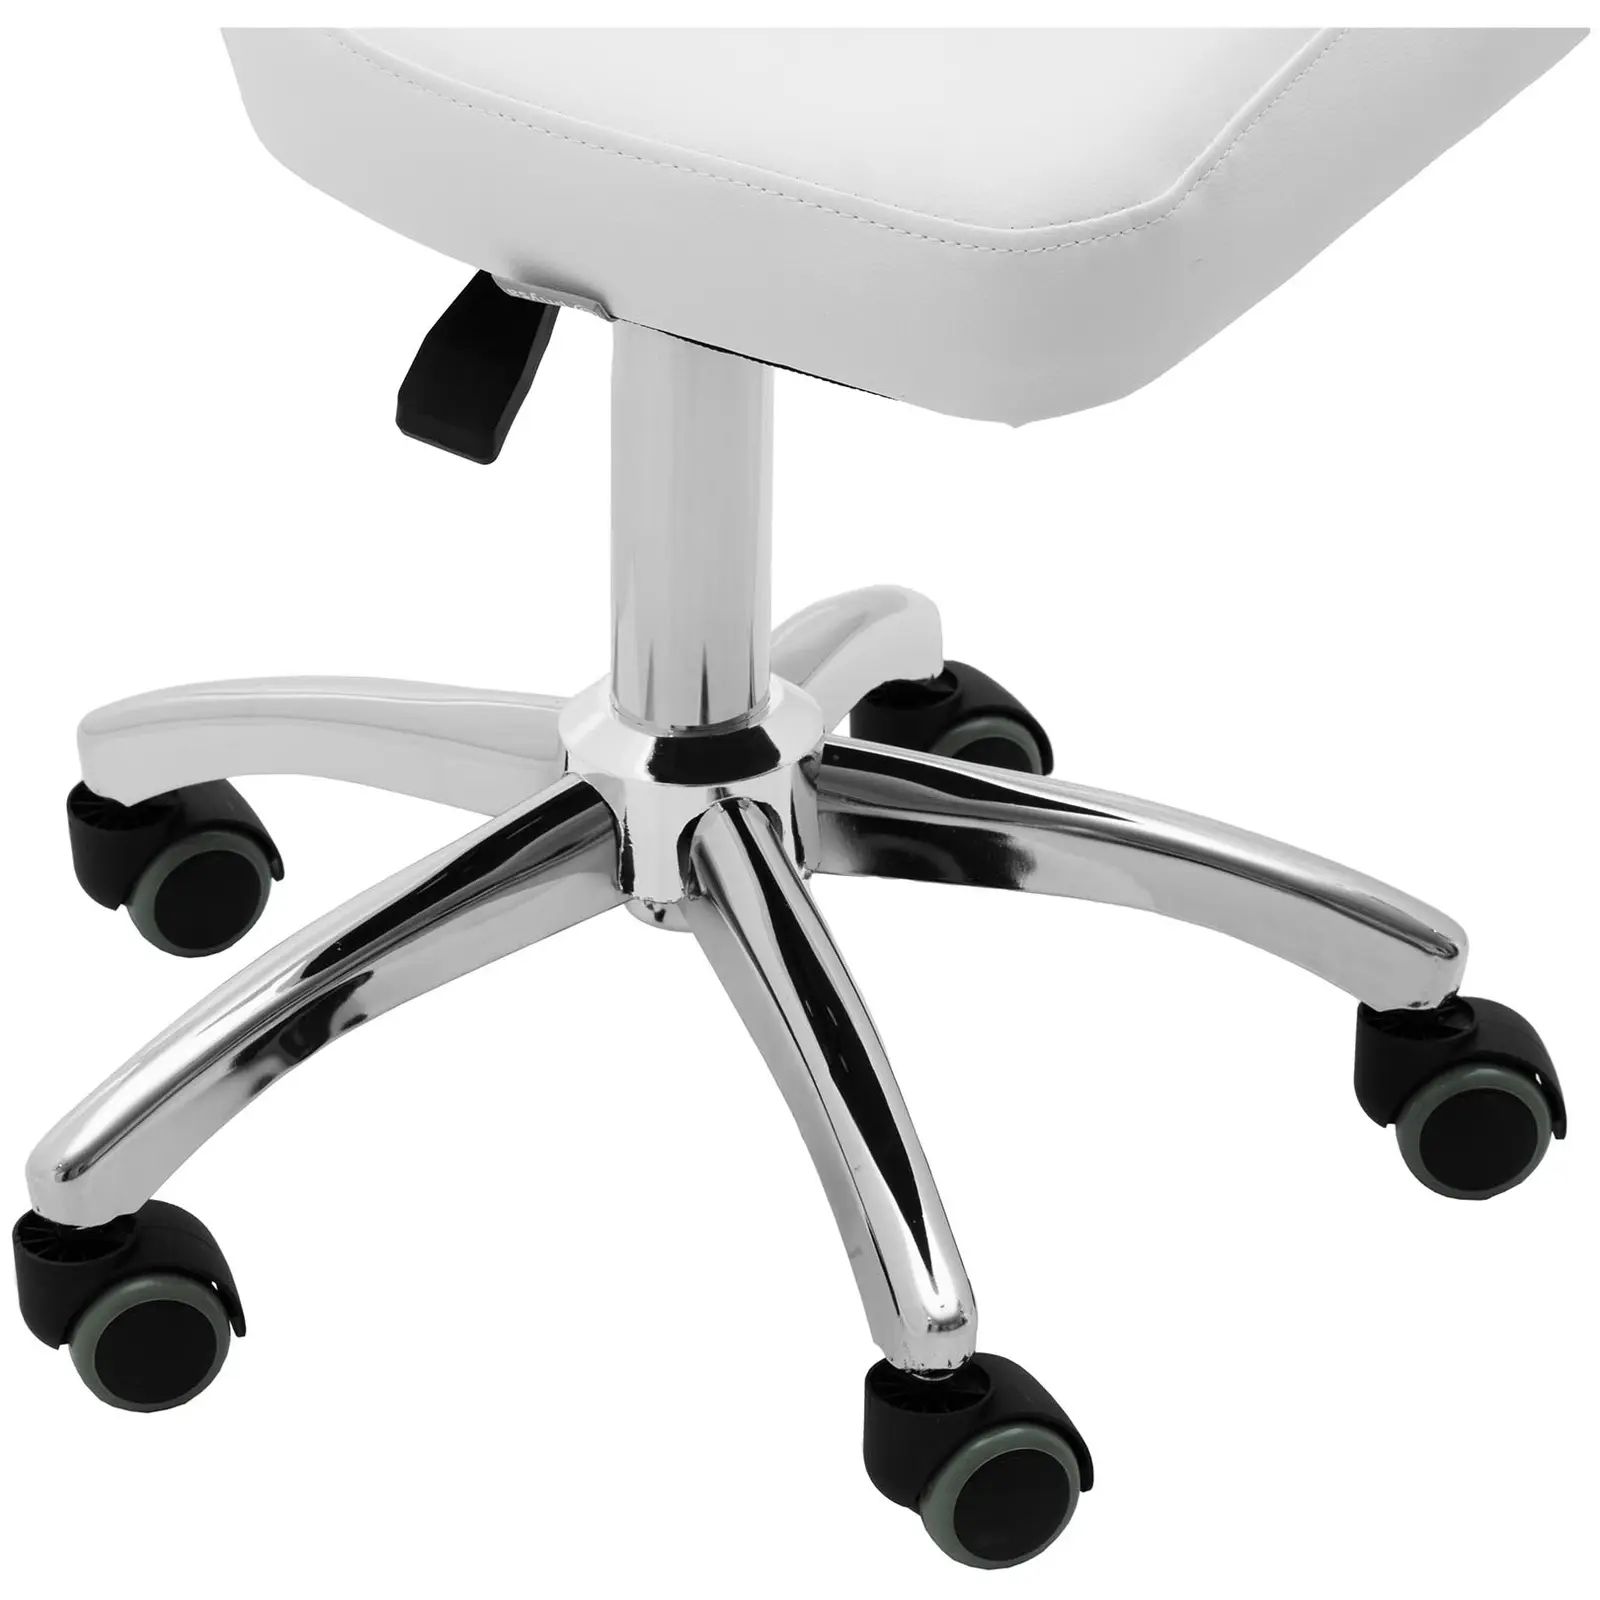 Otočná židle na kolečkách s opěradlem - 49–63 cm - 150 kg - bílá